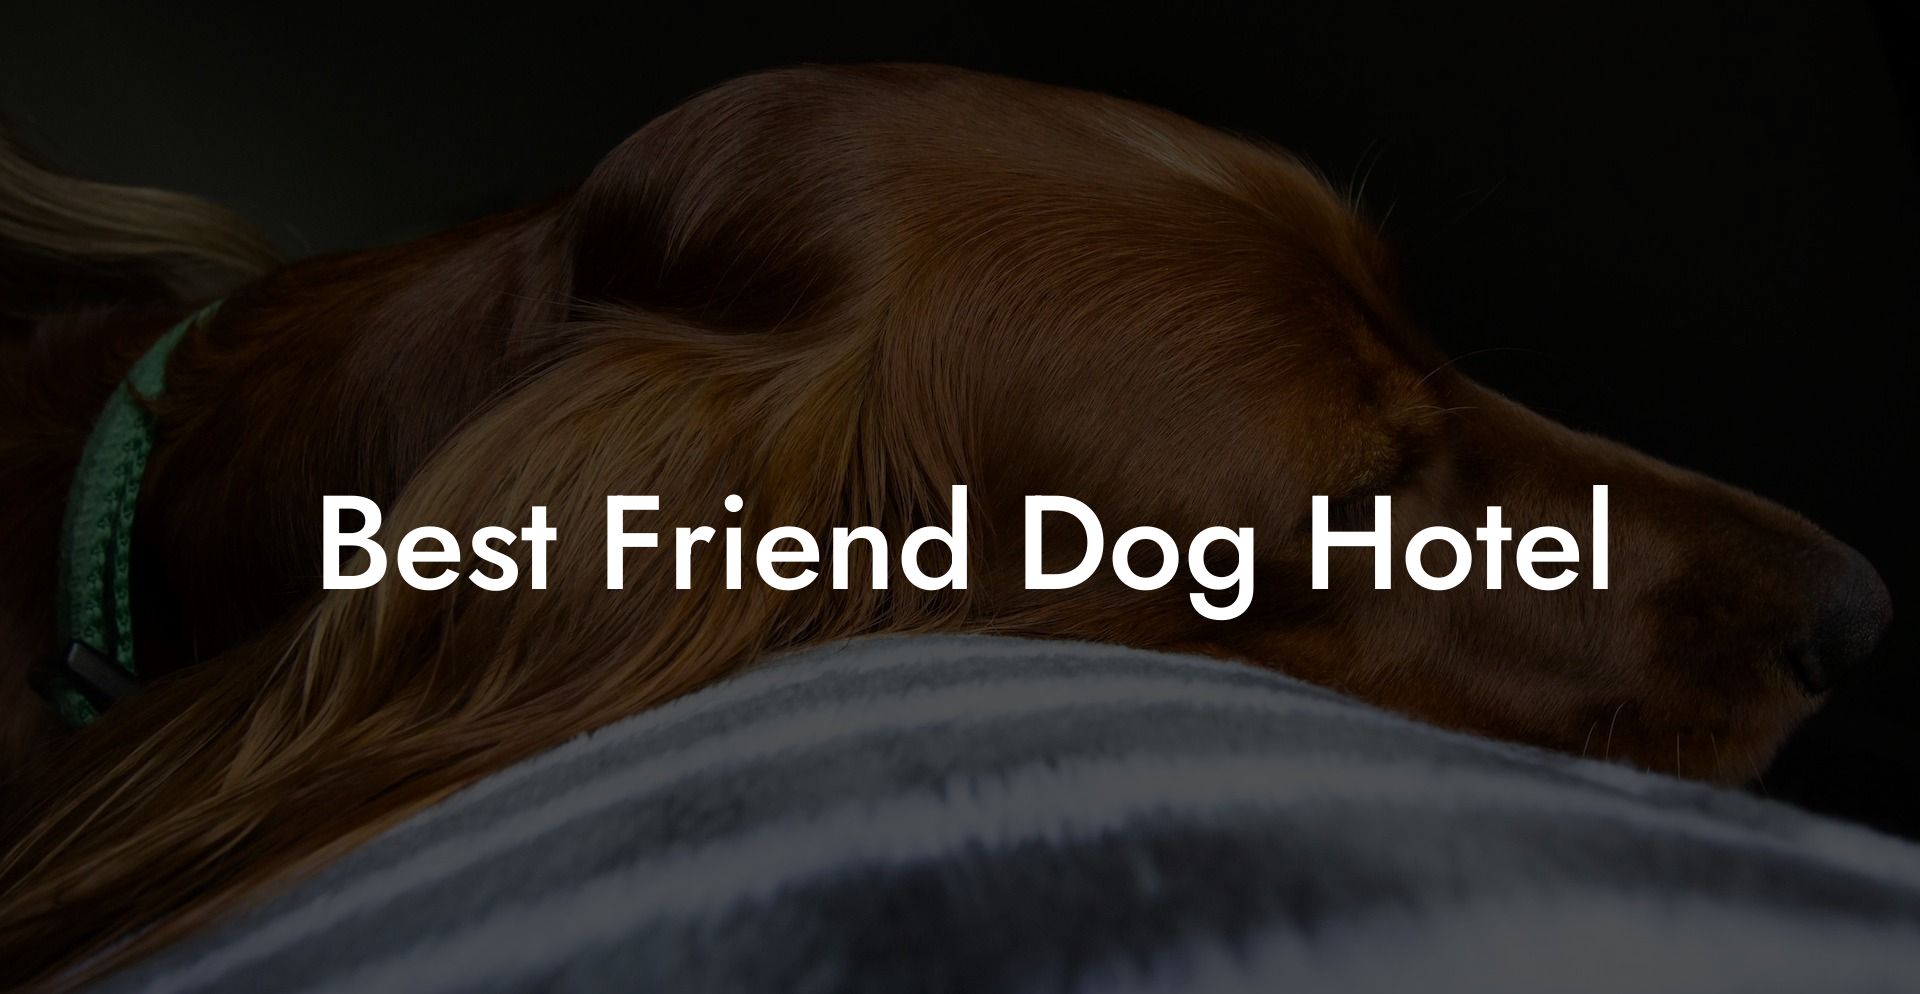 Best Friend Dog Hotel